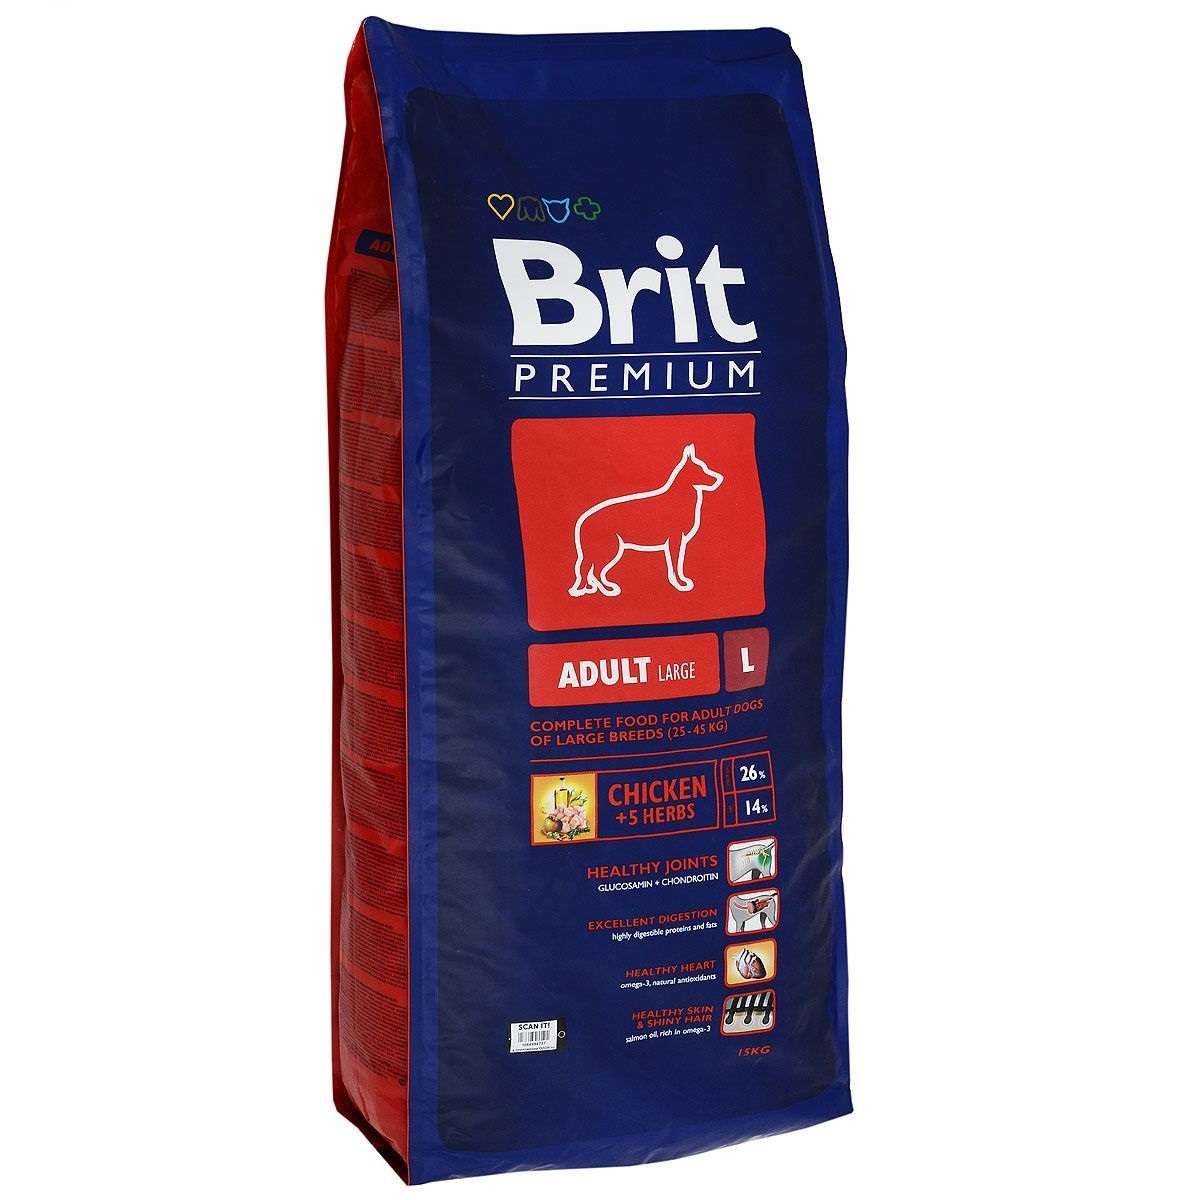 Брит для собак 15 кг. Корм для собак Brit Premium. Сухой корм Brit Premium для собак. Брит премиум by nature Эдалт l, для взрослых собак крупных пород, 15 кг. Brit Premium Adult l пород с курицей 15 кг.